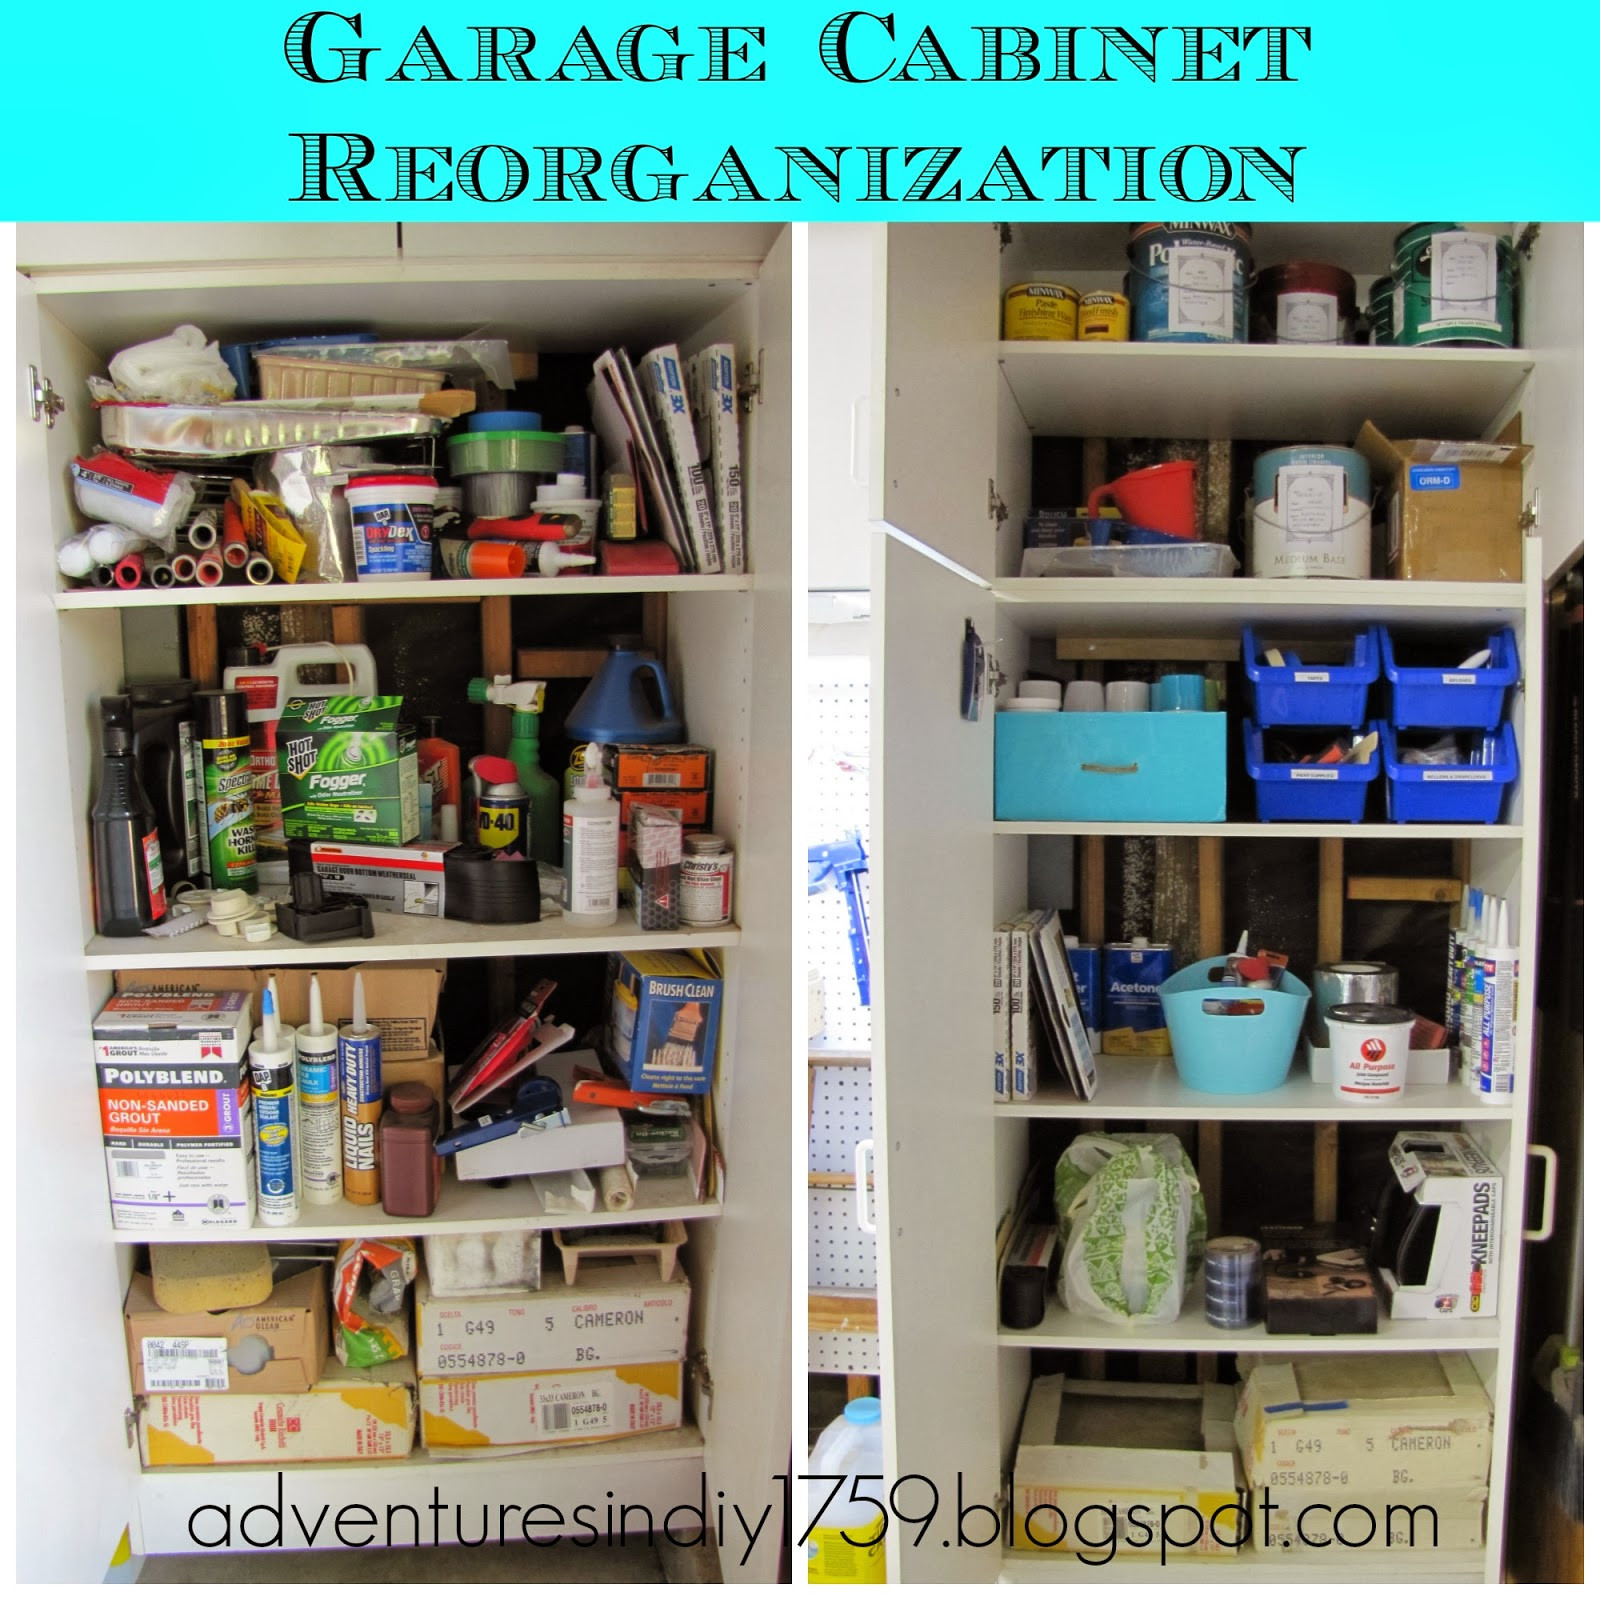 Garage Cabinet Organization
 Adventures in DIY Garage Organization Inside the Cabinets